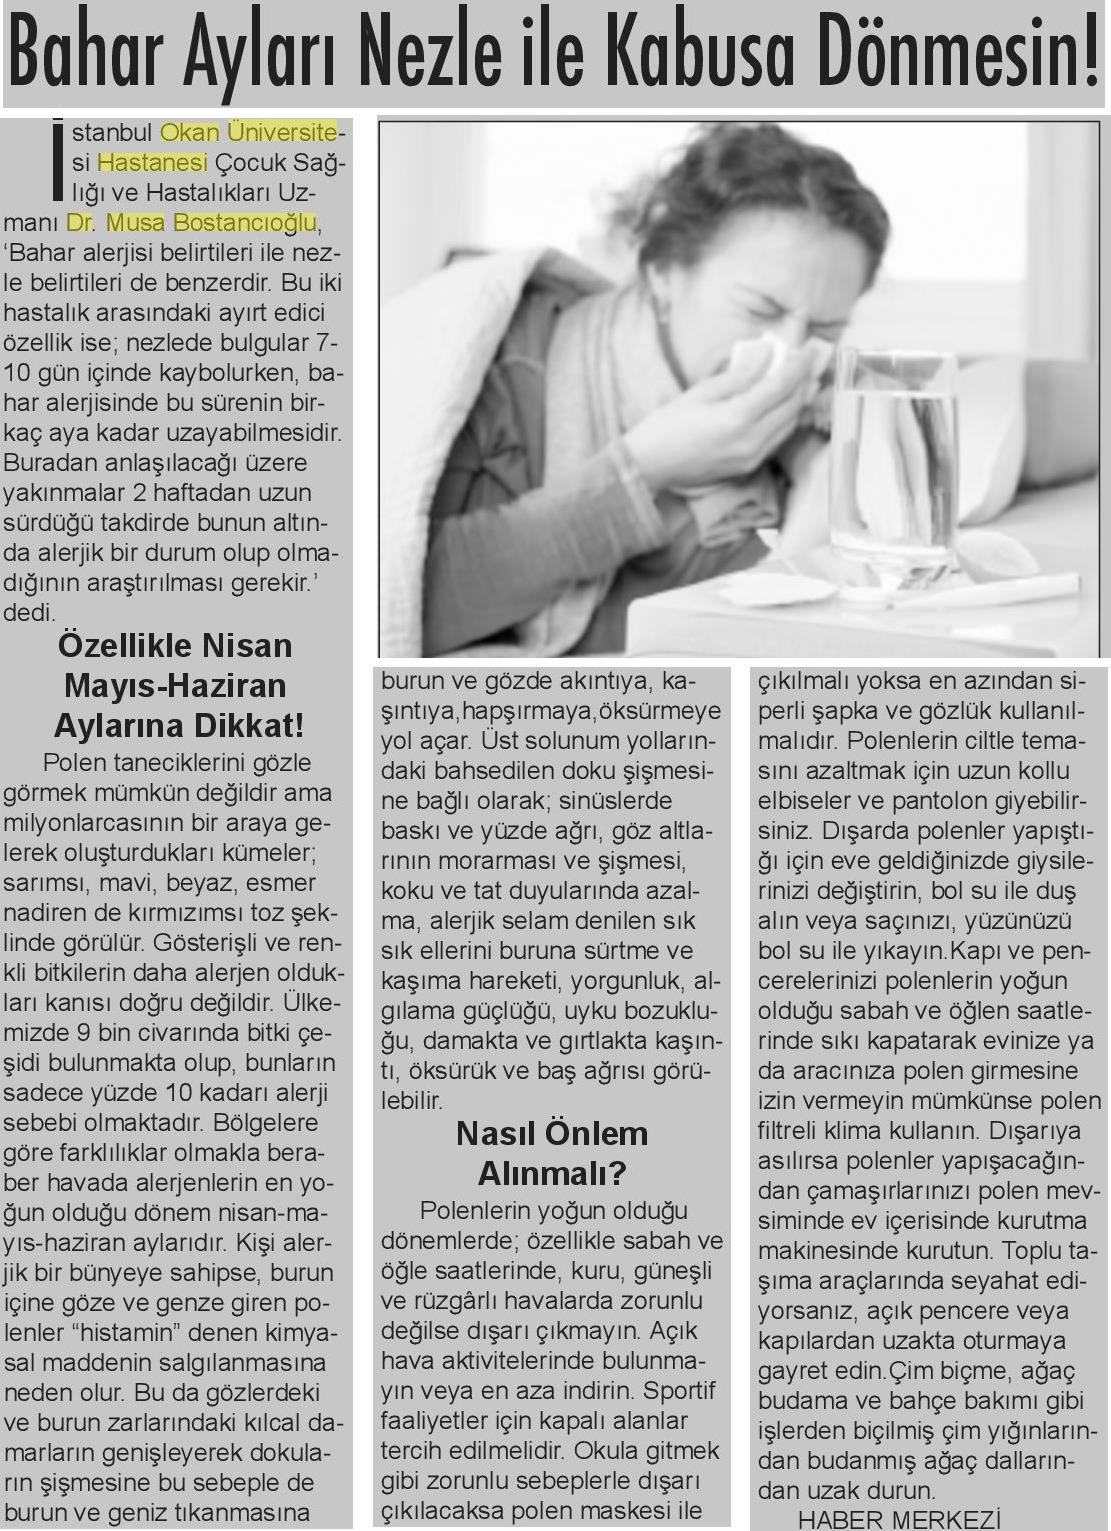 26.03.2019 Tribün Gazetesi BAHAR AYLARI NEZLE İLE KABUSA DÖNMESİN!